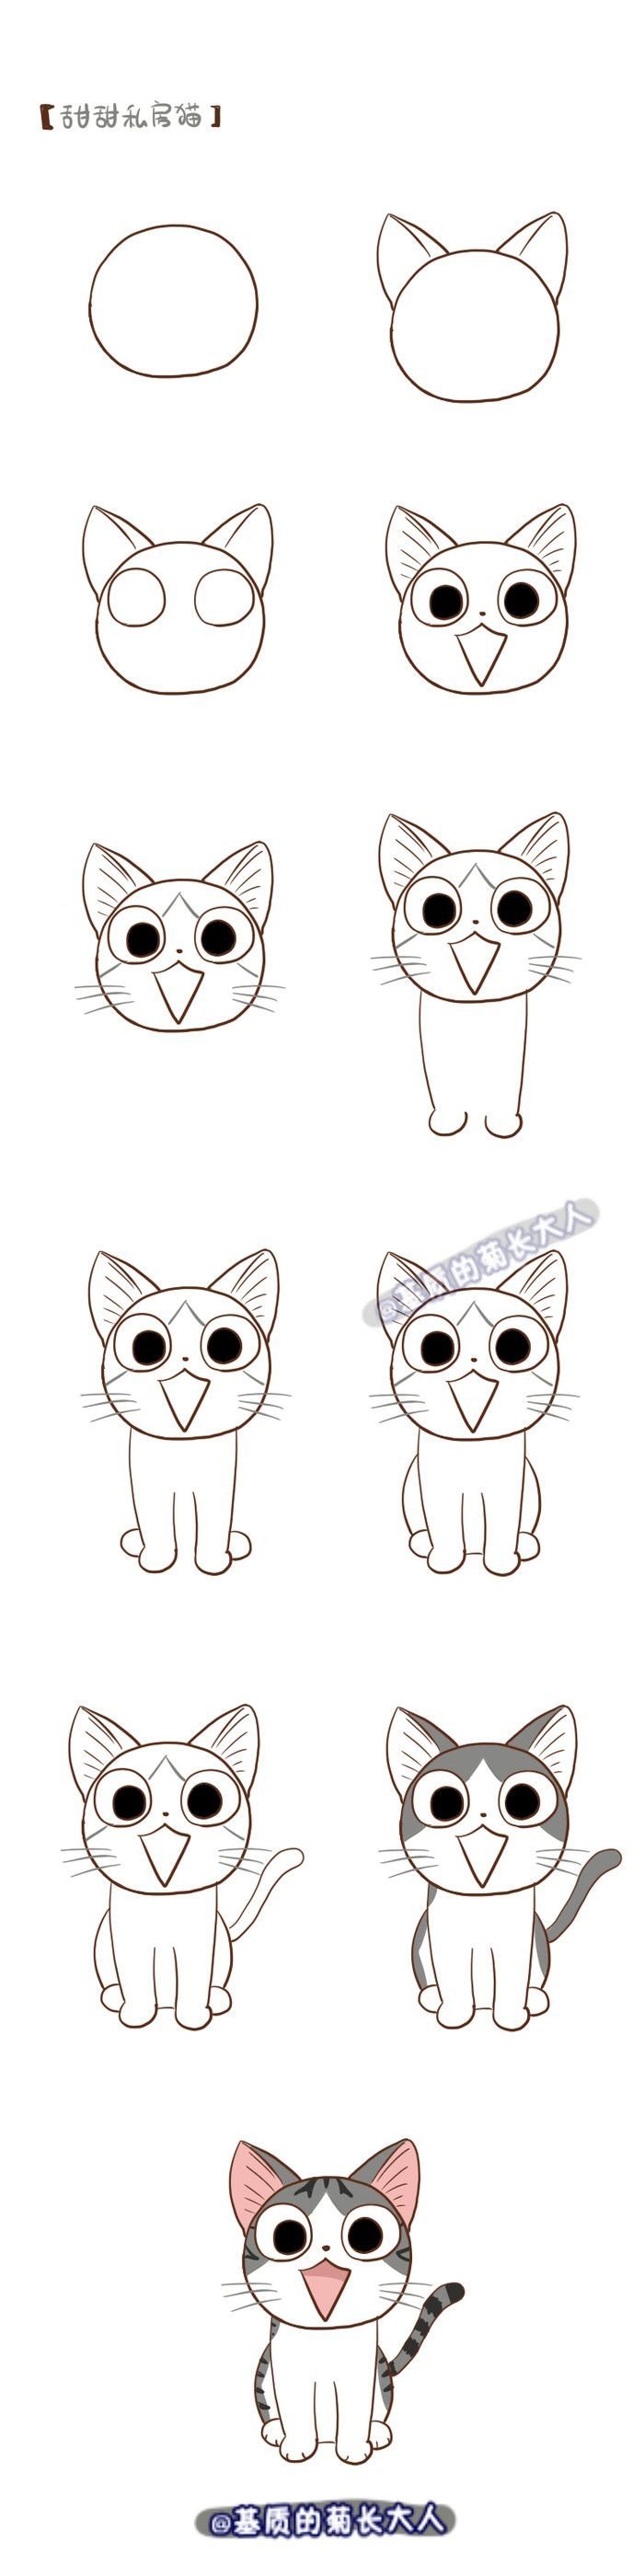 Лёгкий рисунок котика для срисовки